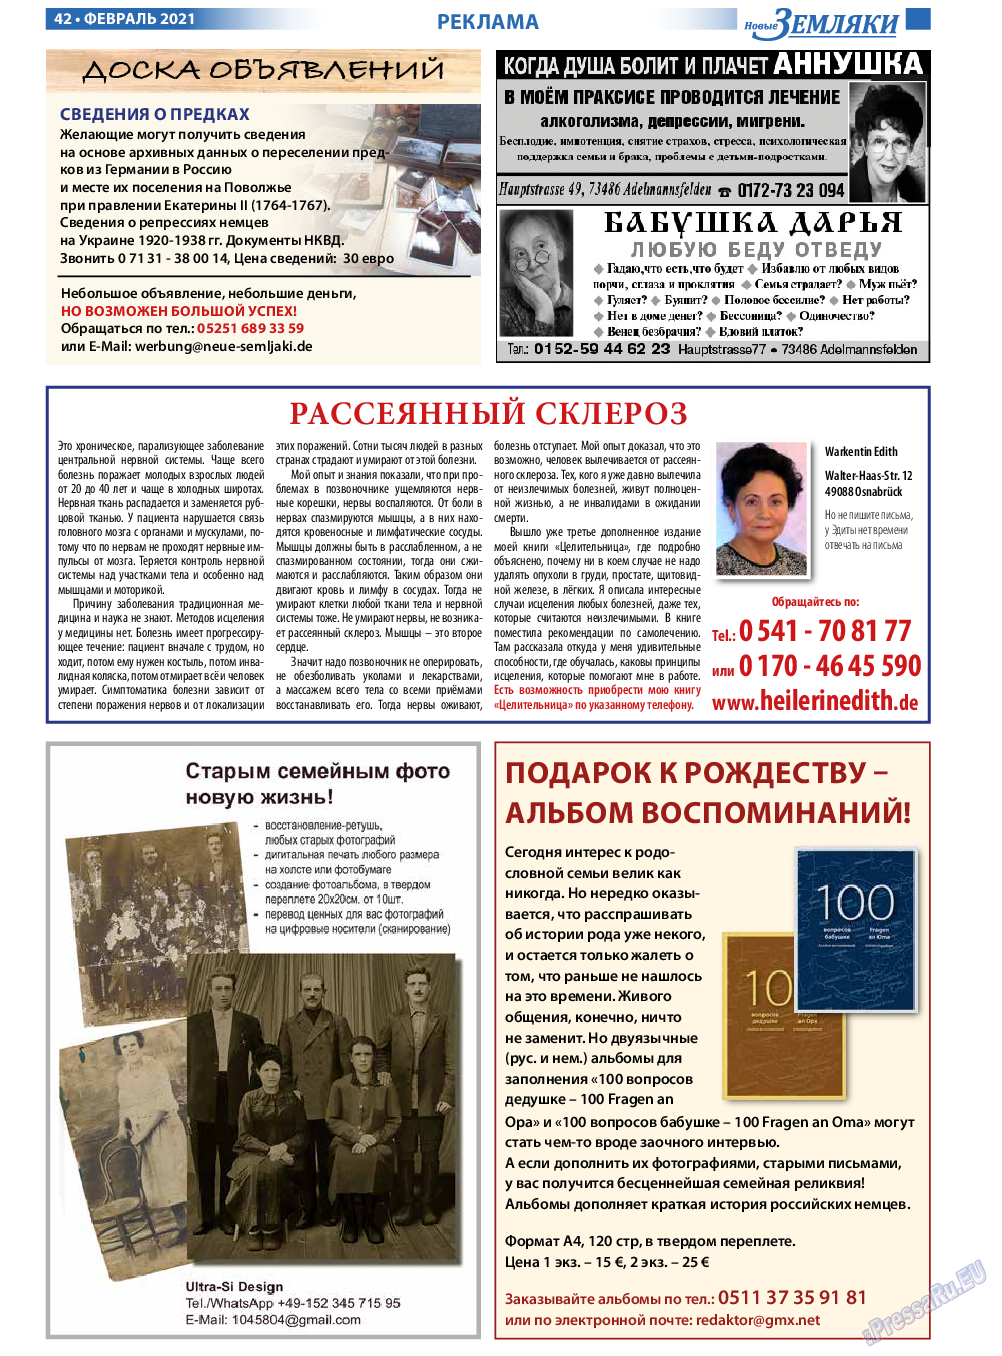 Новые Земляки, газета. 2021 №2 стр.42